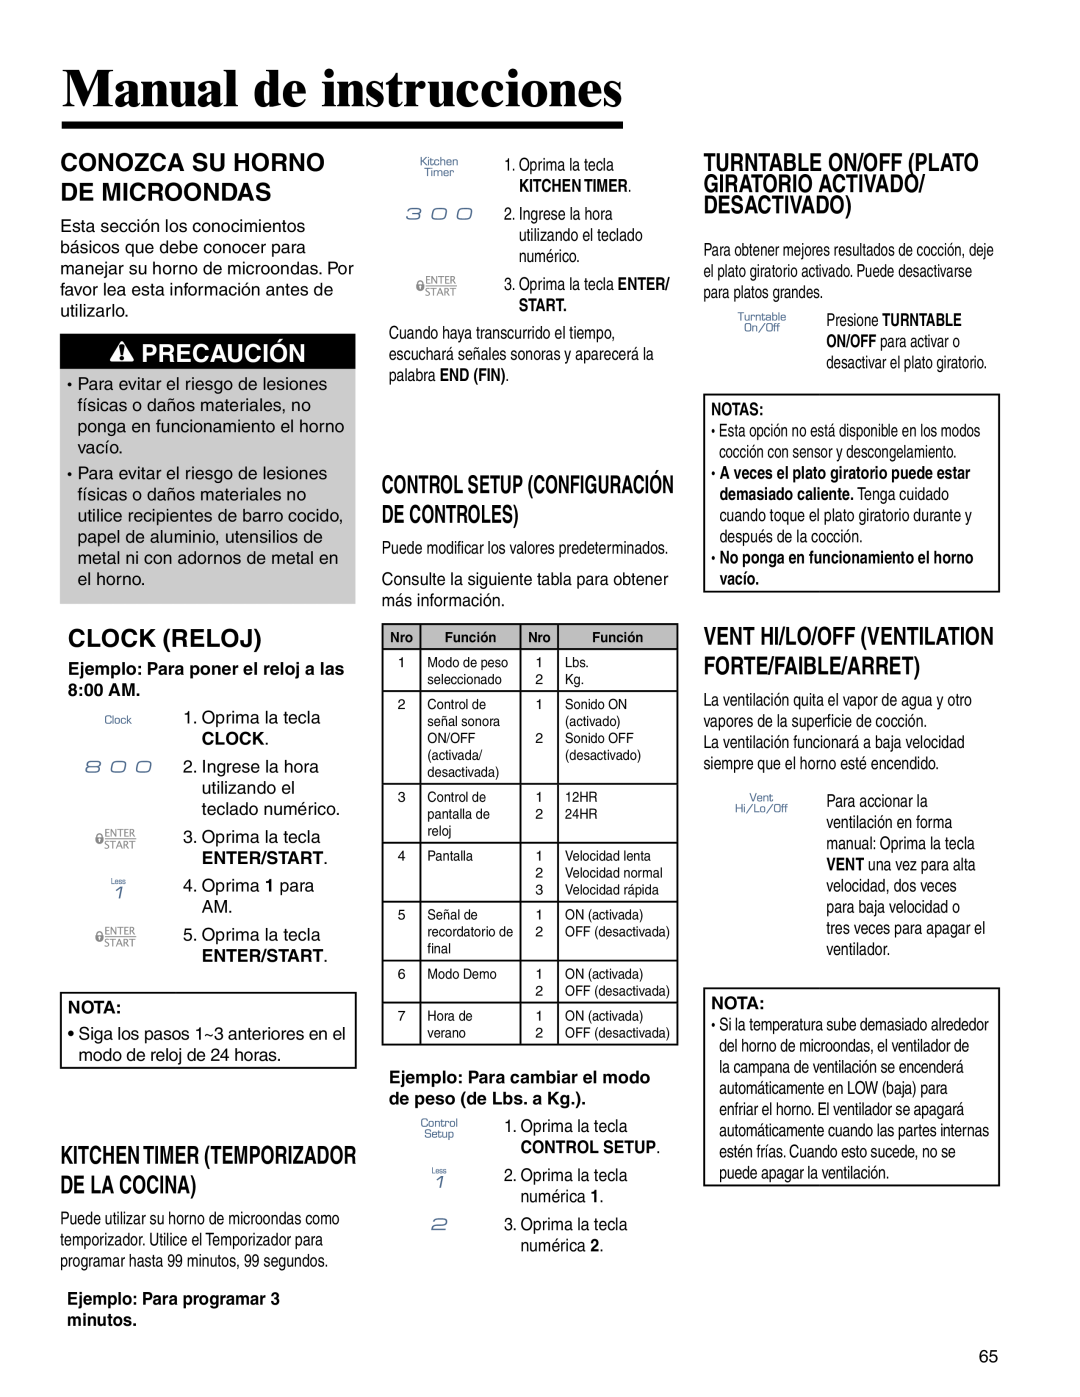 Maytag MMV4205BA Manual de instrucciones, Conozca Su Horno De Microondas, Precaución, Clock Reloj 